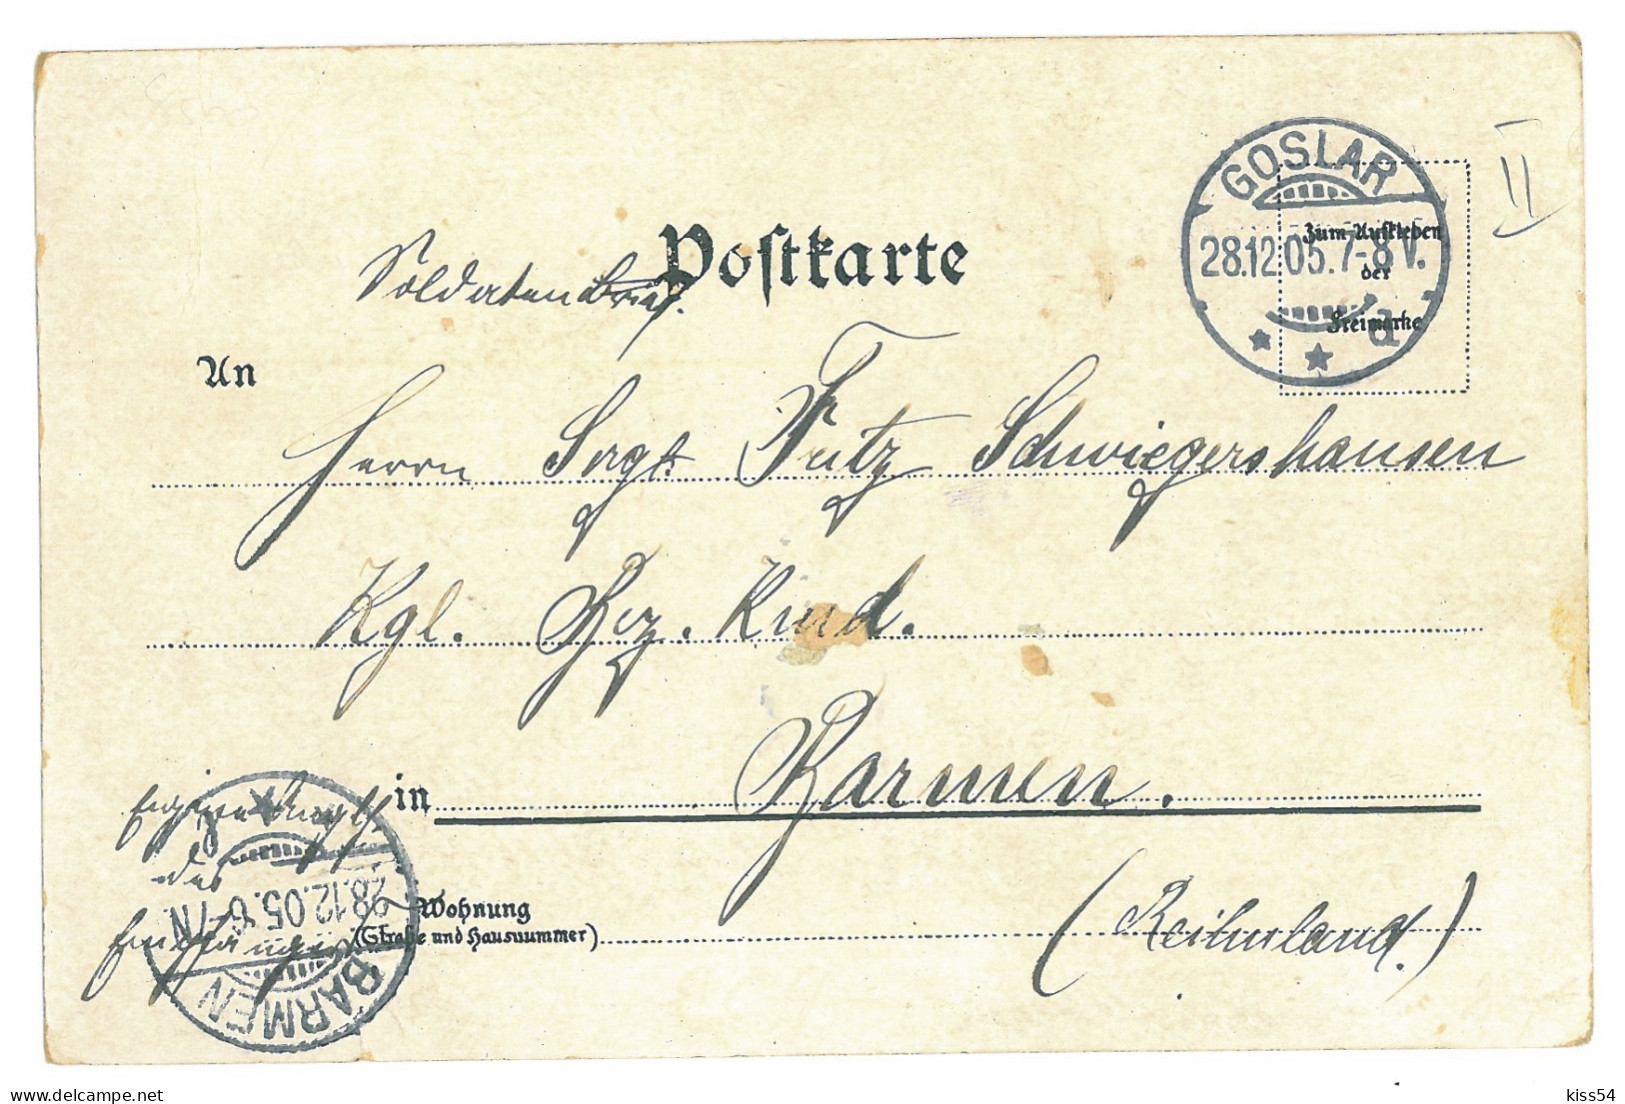 GER 60 - 17237 NURNBERG, Litho, Germany - Old Postcard - Used - 1905 - Nuernberg